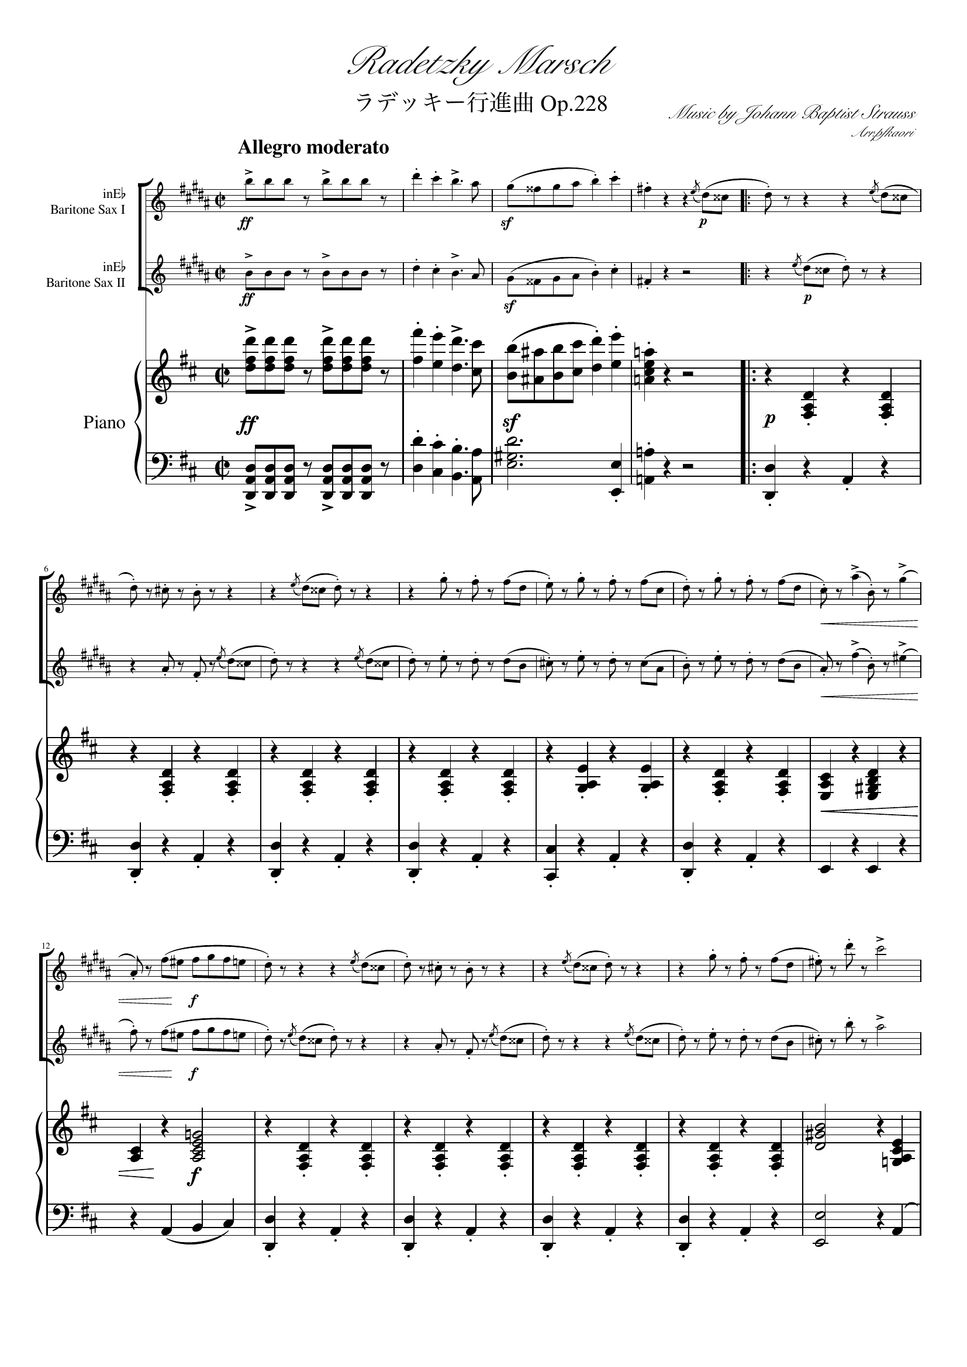 ヨハンシュトラウス1世 - ラデッキー行進曲 (D・ピアノトリオ/バリトンサックスデュオ) by pfkaori